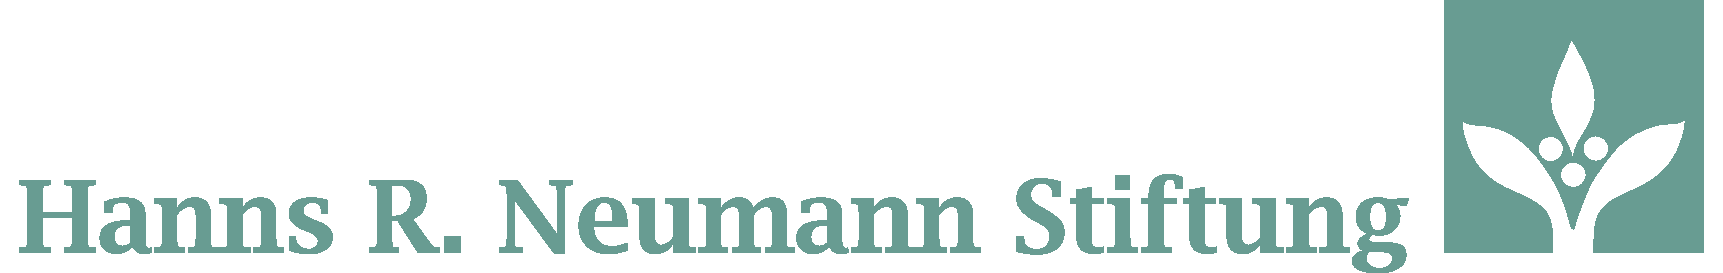 Hans R. Neumann Stiftung-logo